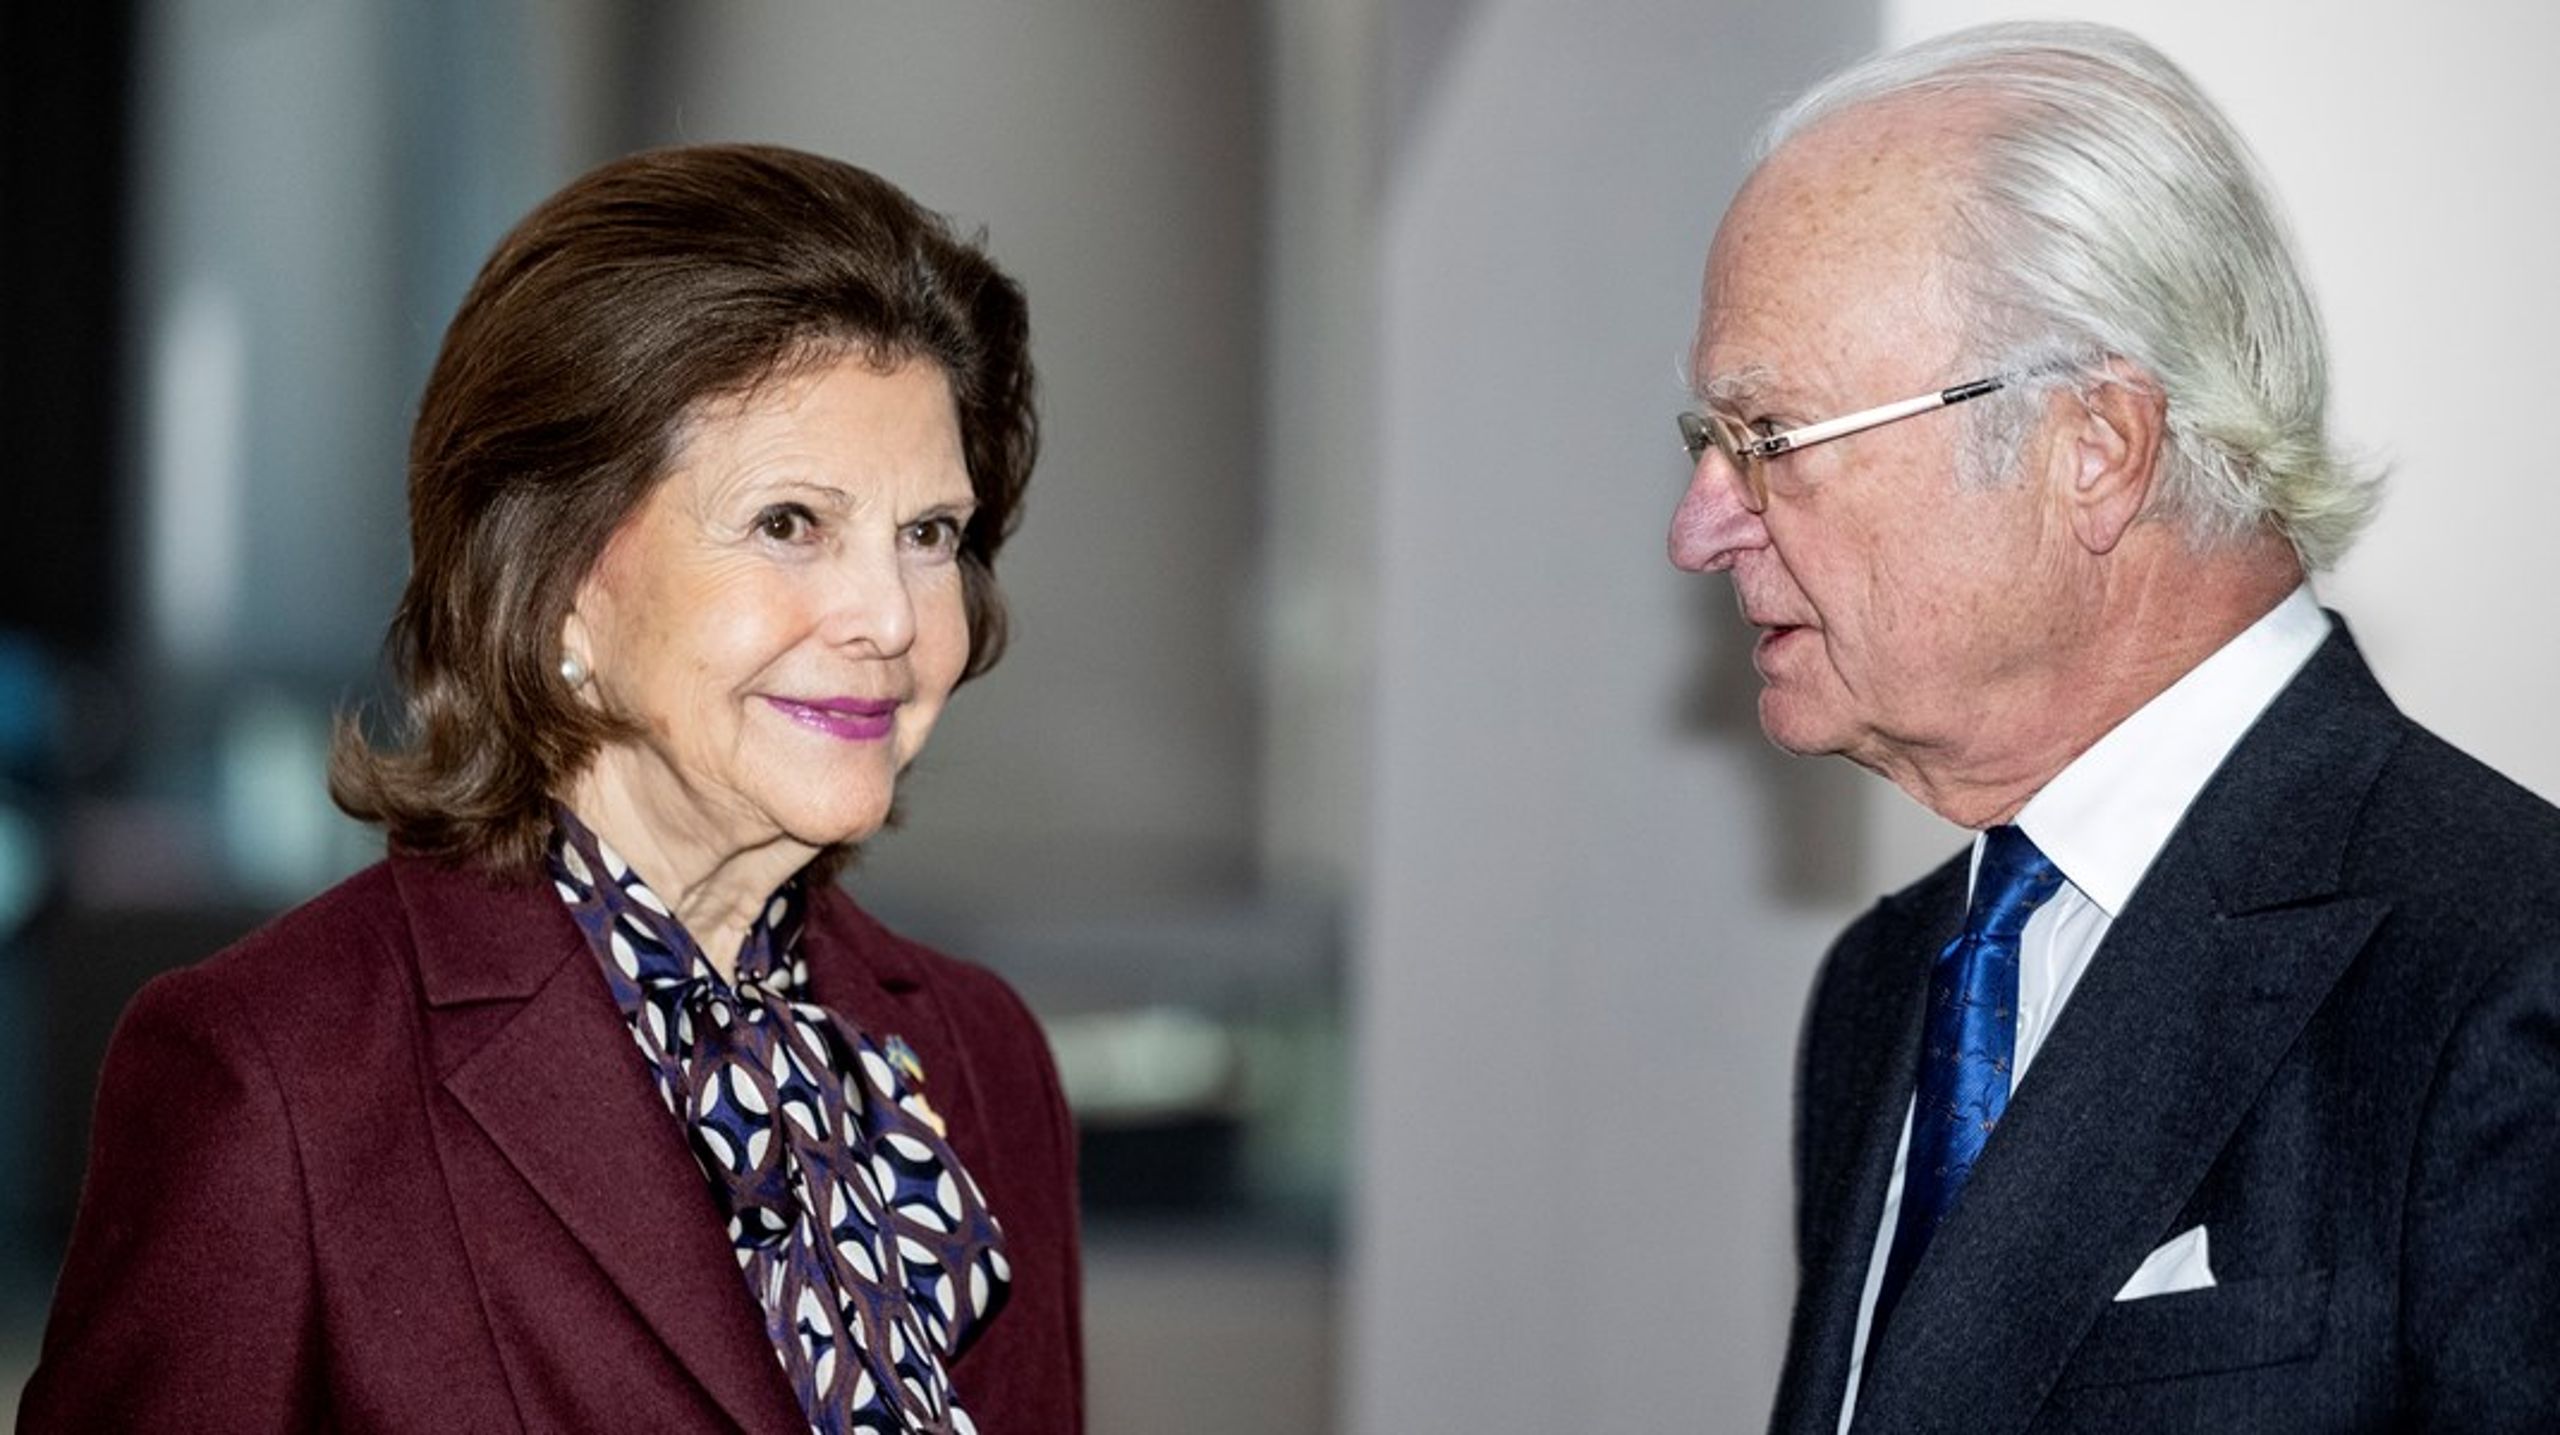 Kung Carl Gustaf och drottning Silvia borde bli arbetslösa, menar debattören.